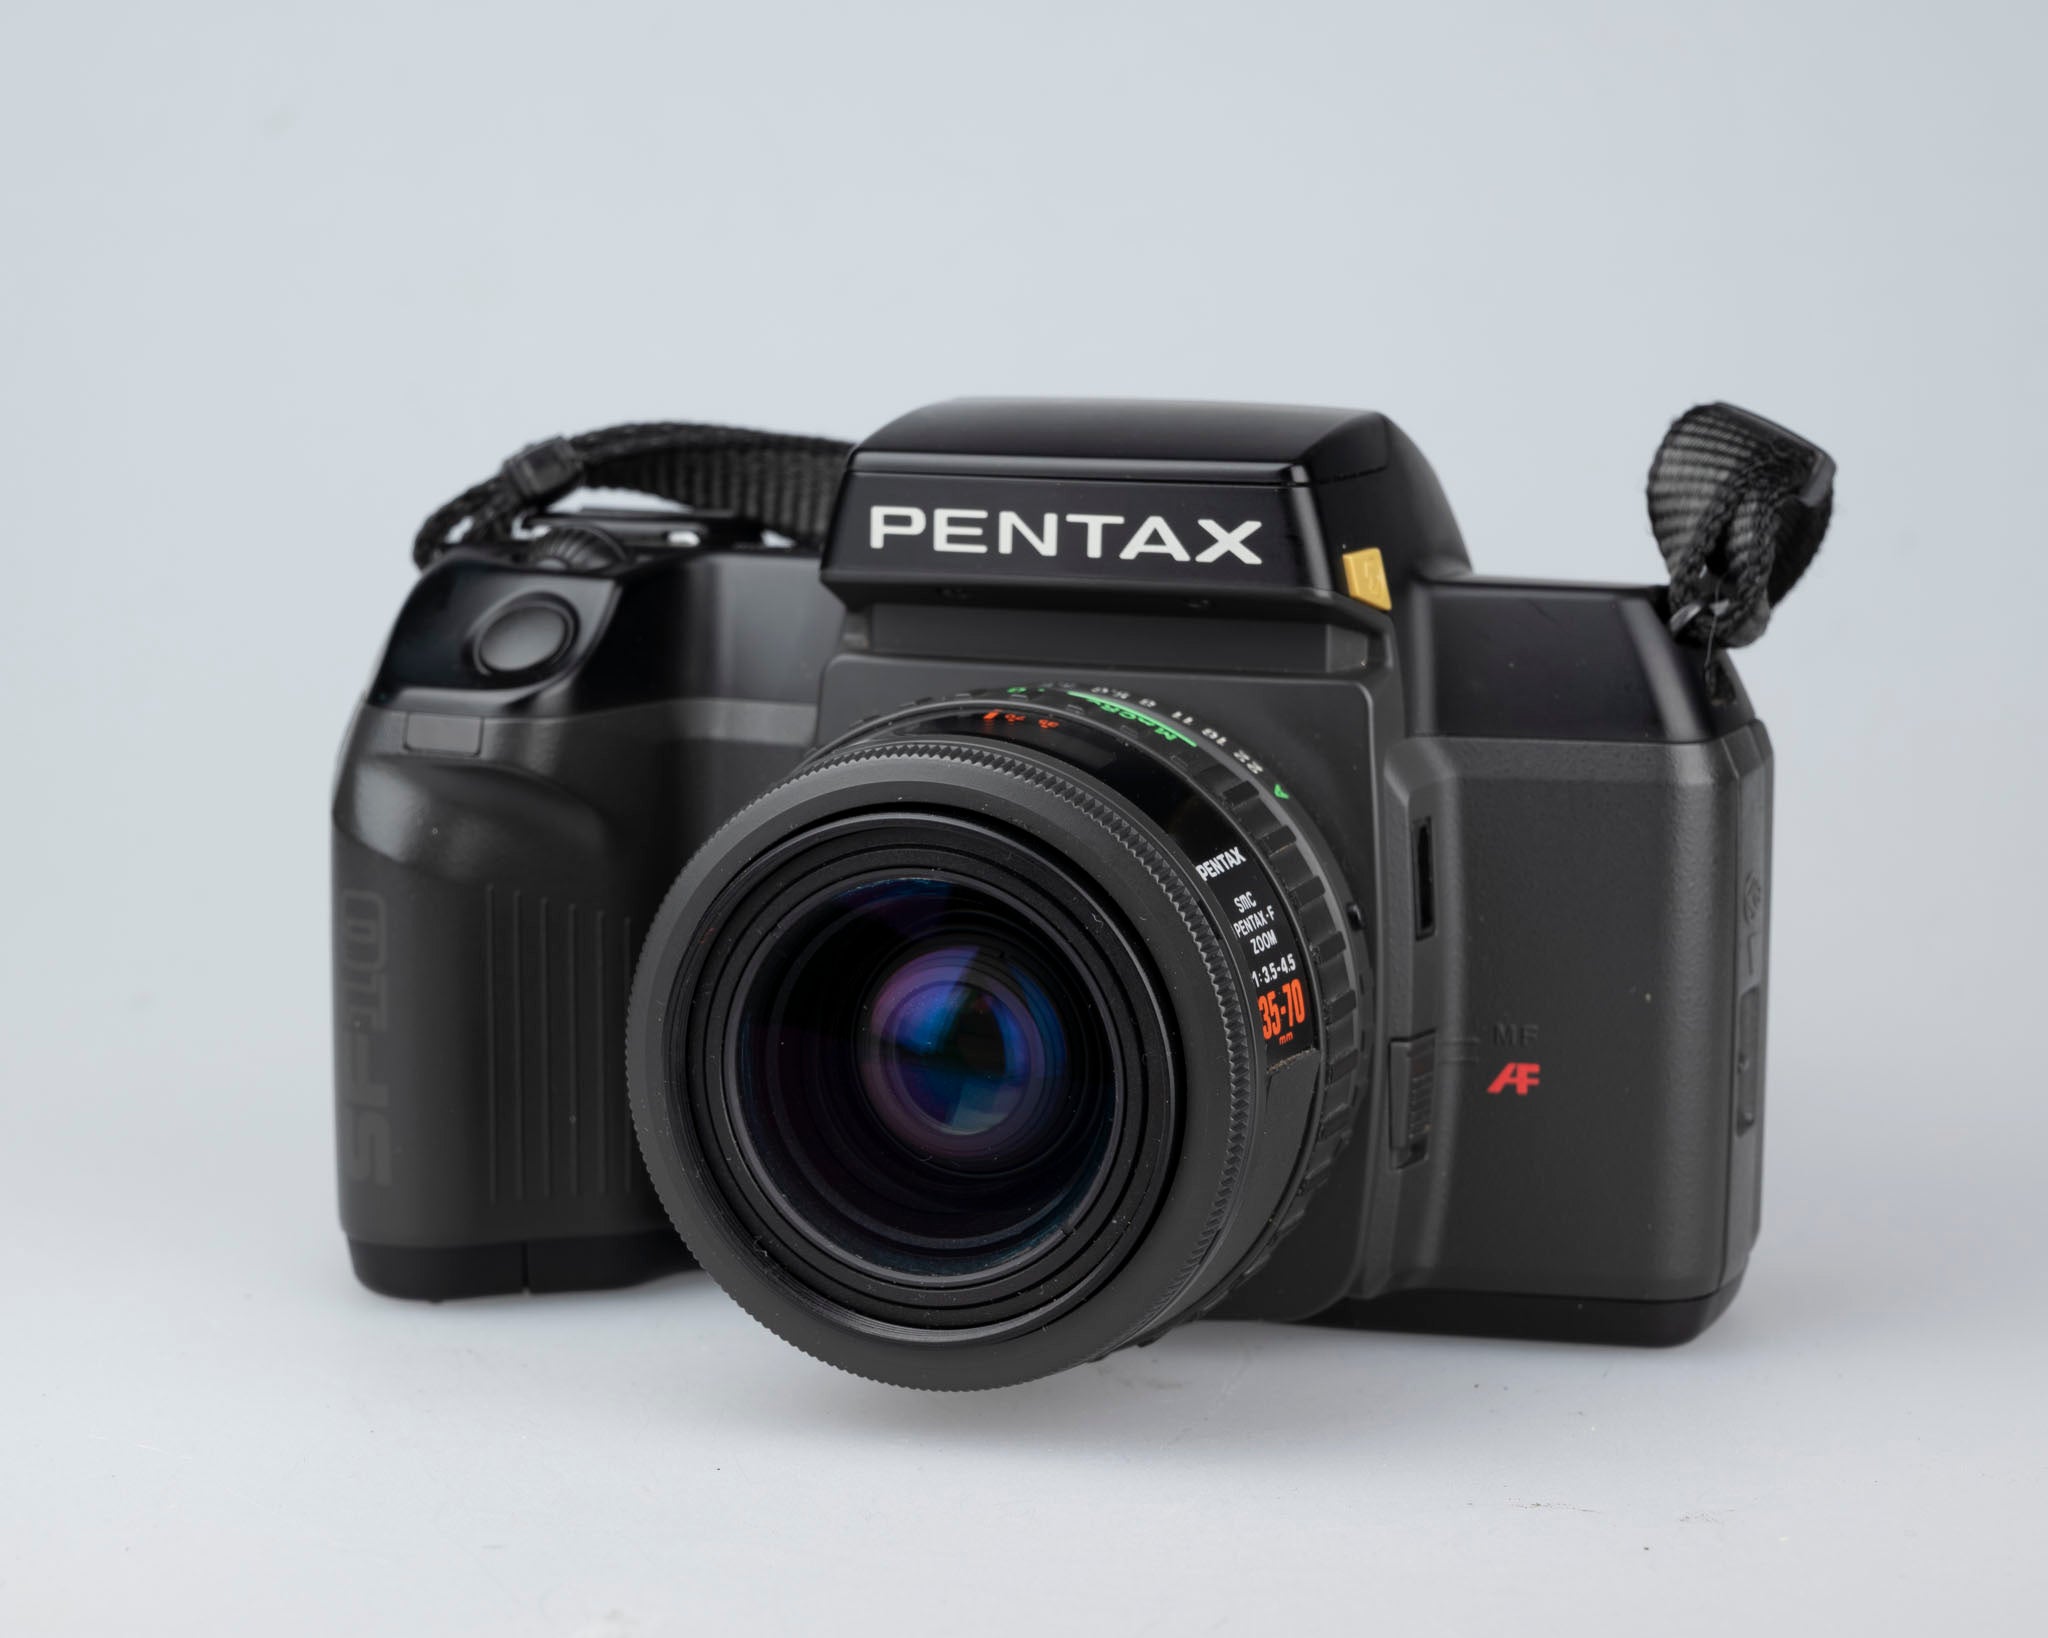 Pentax SF10 35mm SLR w/ SMC Pentax-F 35-70mmm 1:3.5-4.5 compact